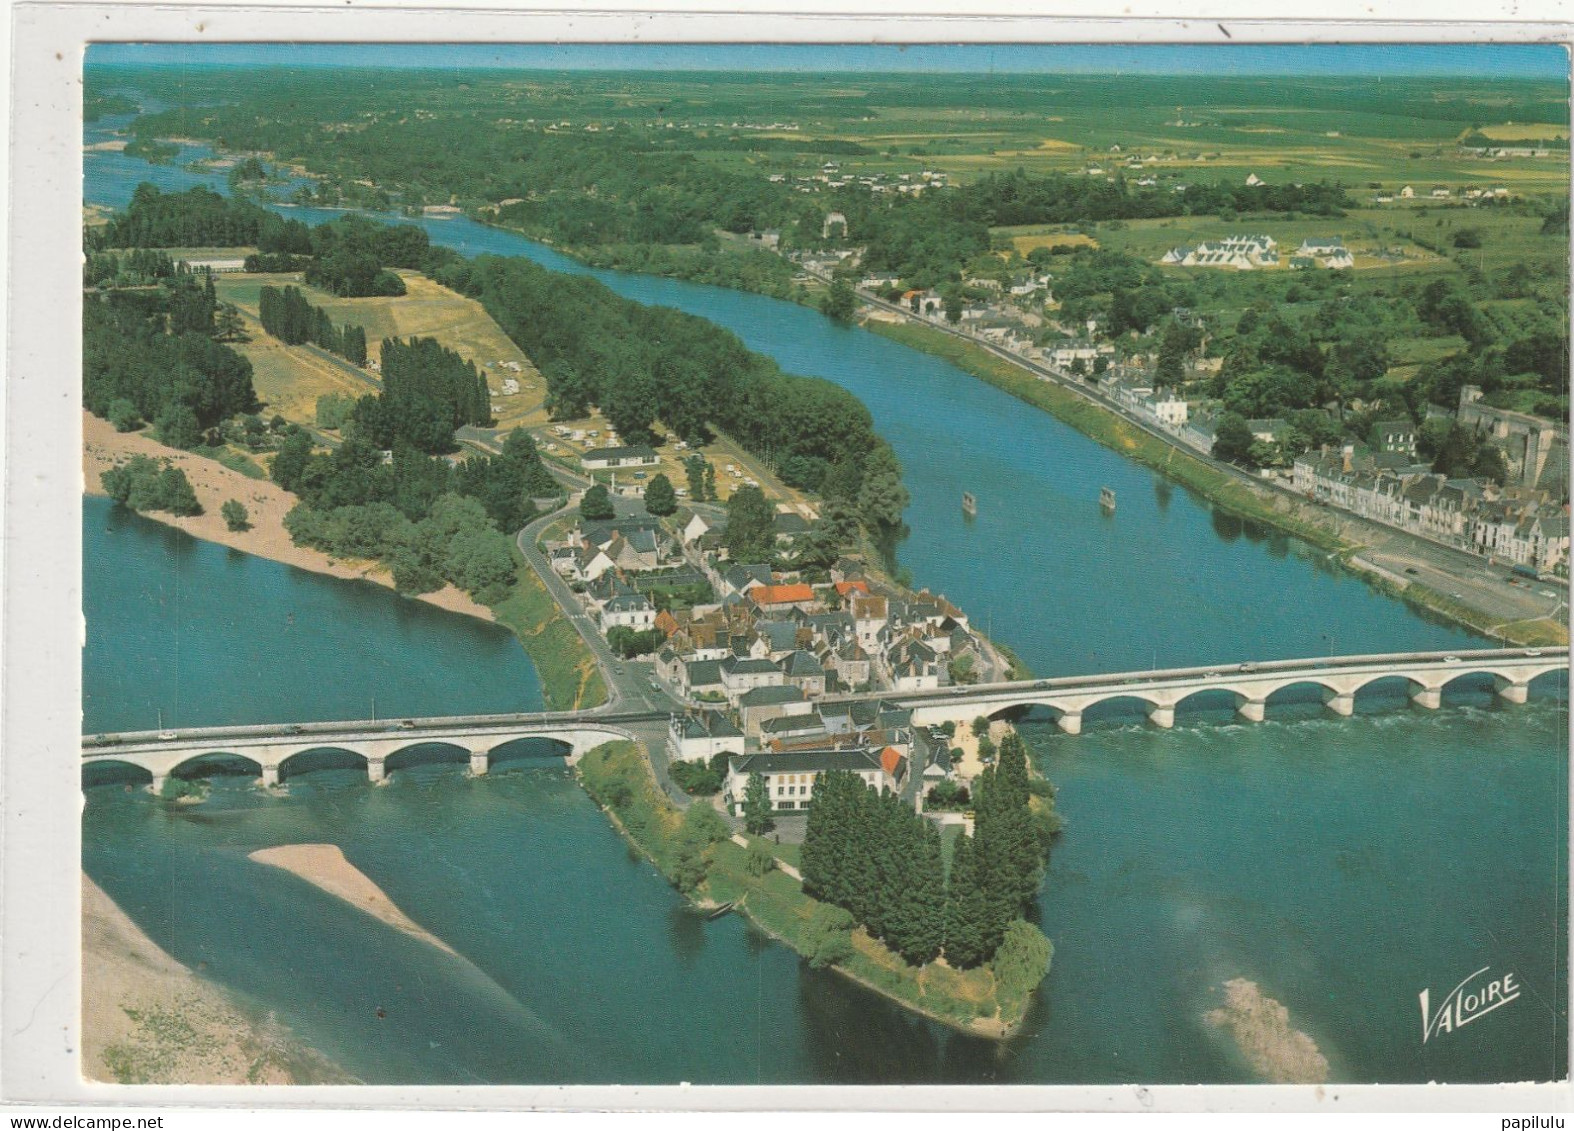 120 DEPT 37 : édit. Valoire N° 2185 : Amboise Vue Aérienne Sur L'Ile D'Or Et La Loire - Amboise